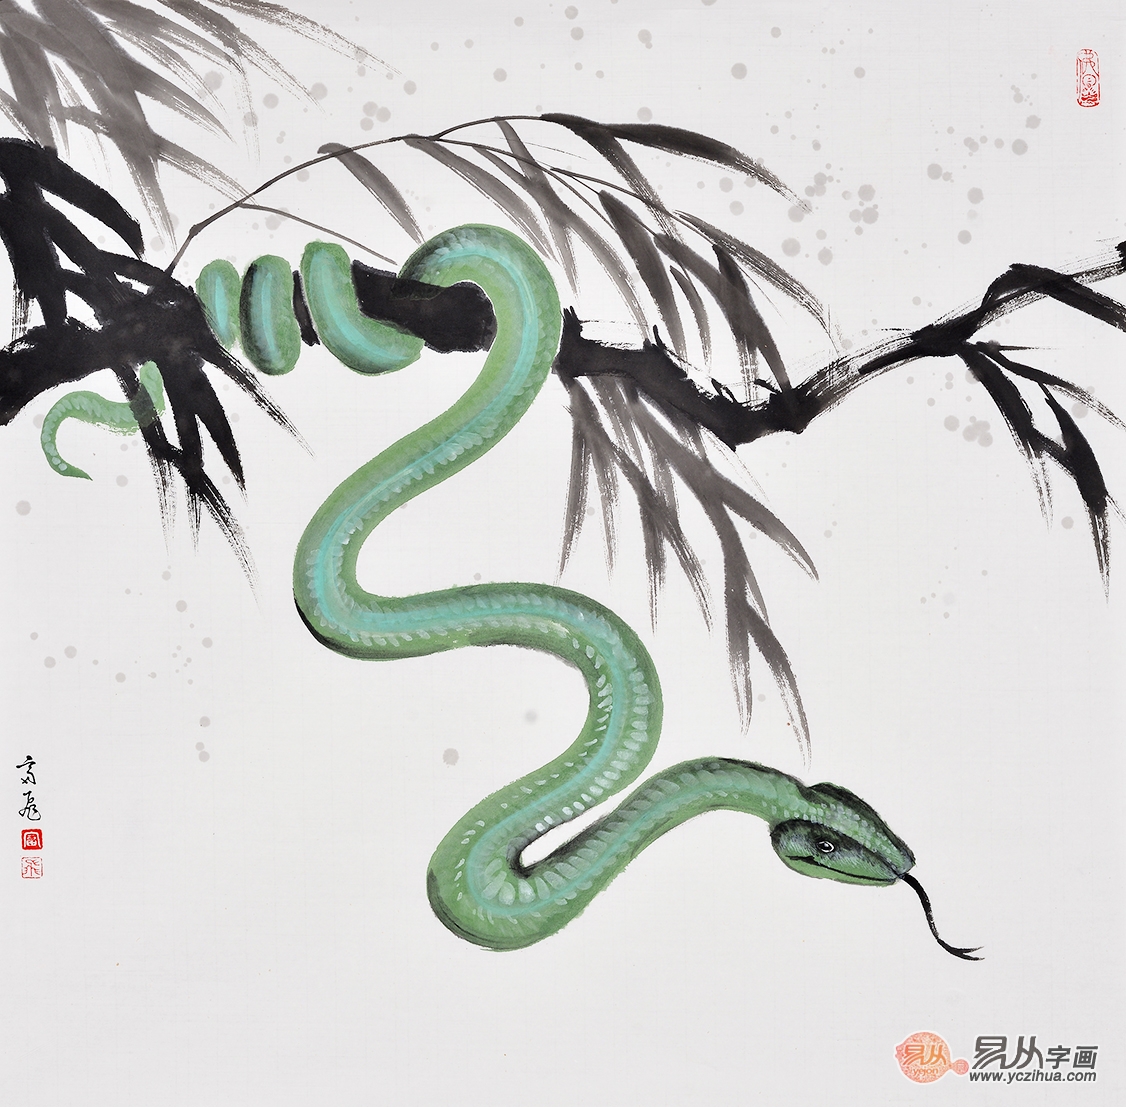 富飞四尺斗方动物画作品十二生肖系列《蛇》